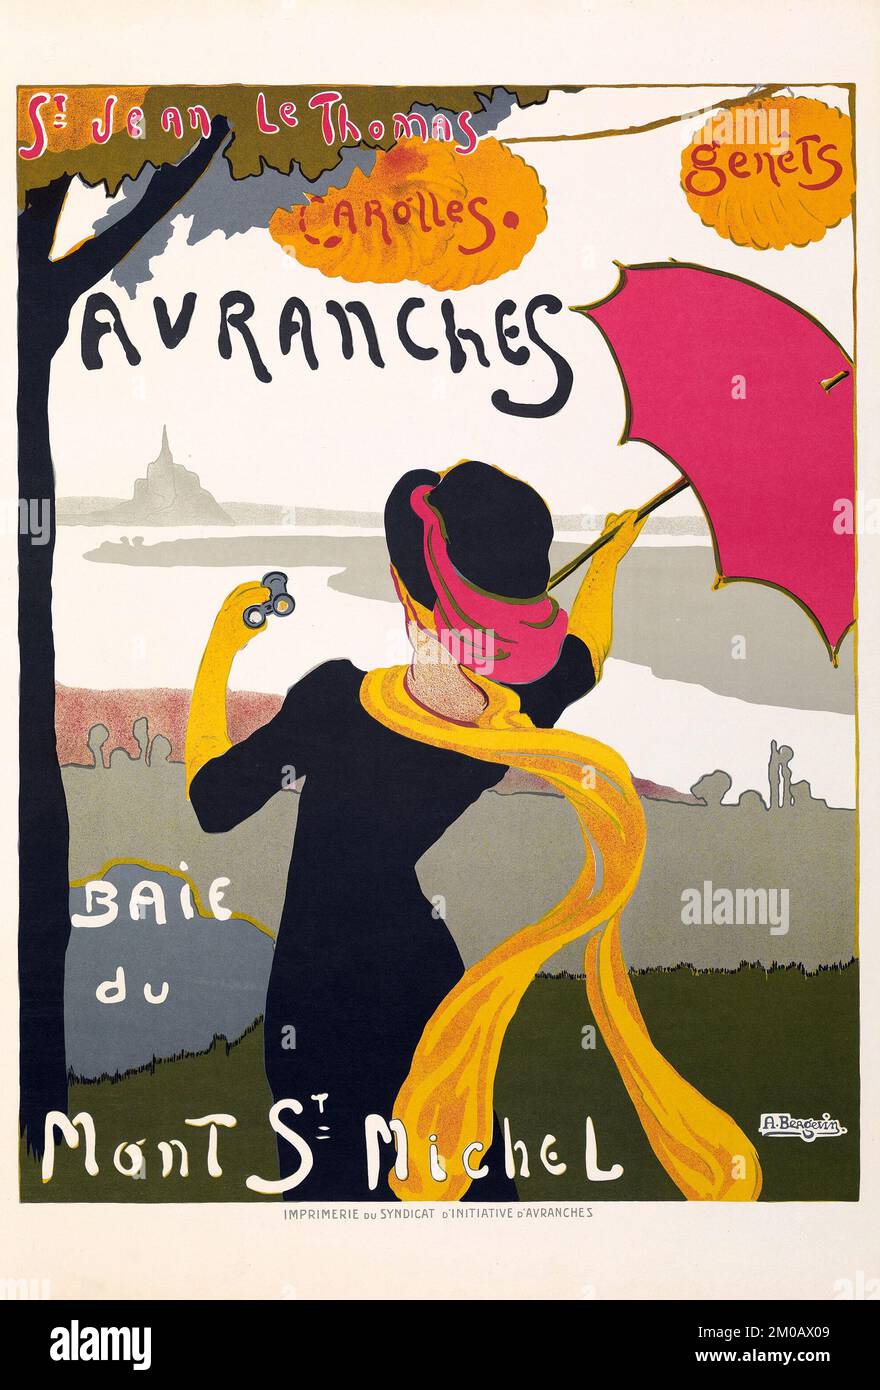 Mujer con paraguas - Avranches Baie du Mont St Michel (Syndicat d'Initiative d'Avranches, c.1910) Foto de stock